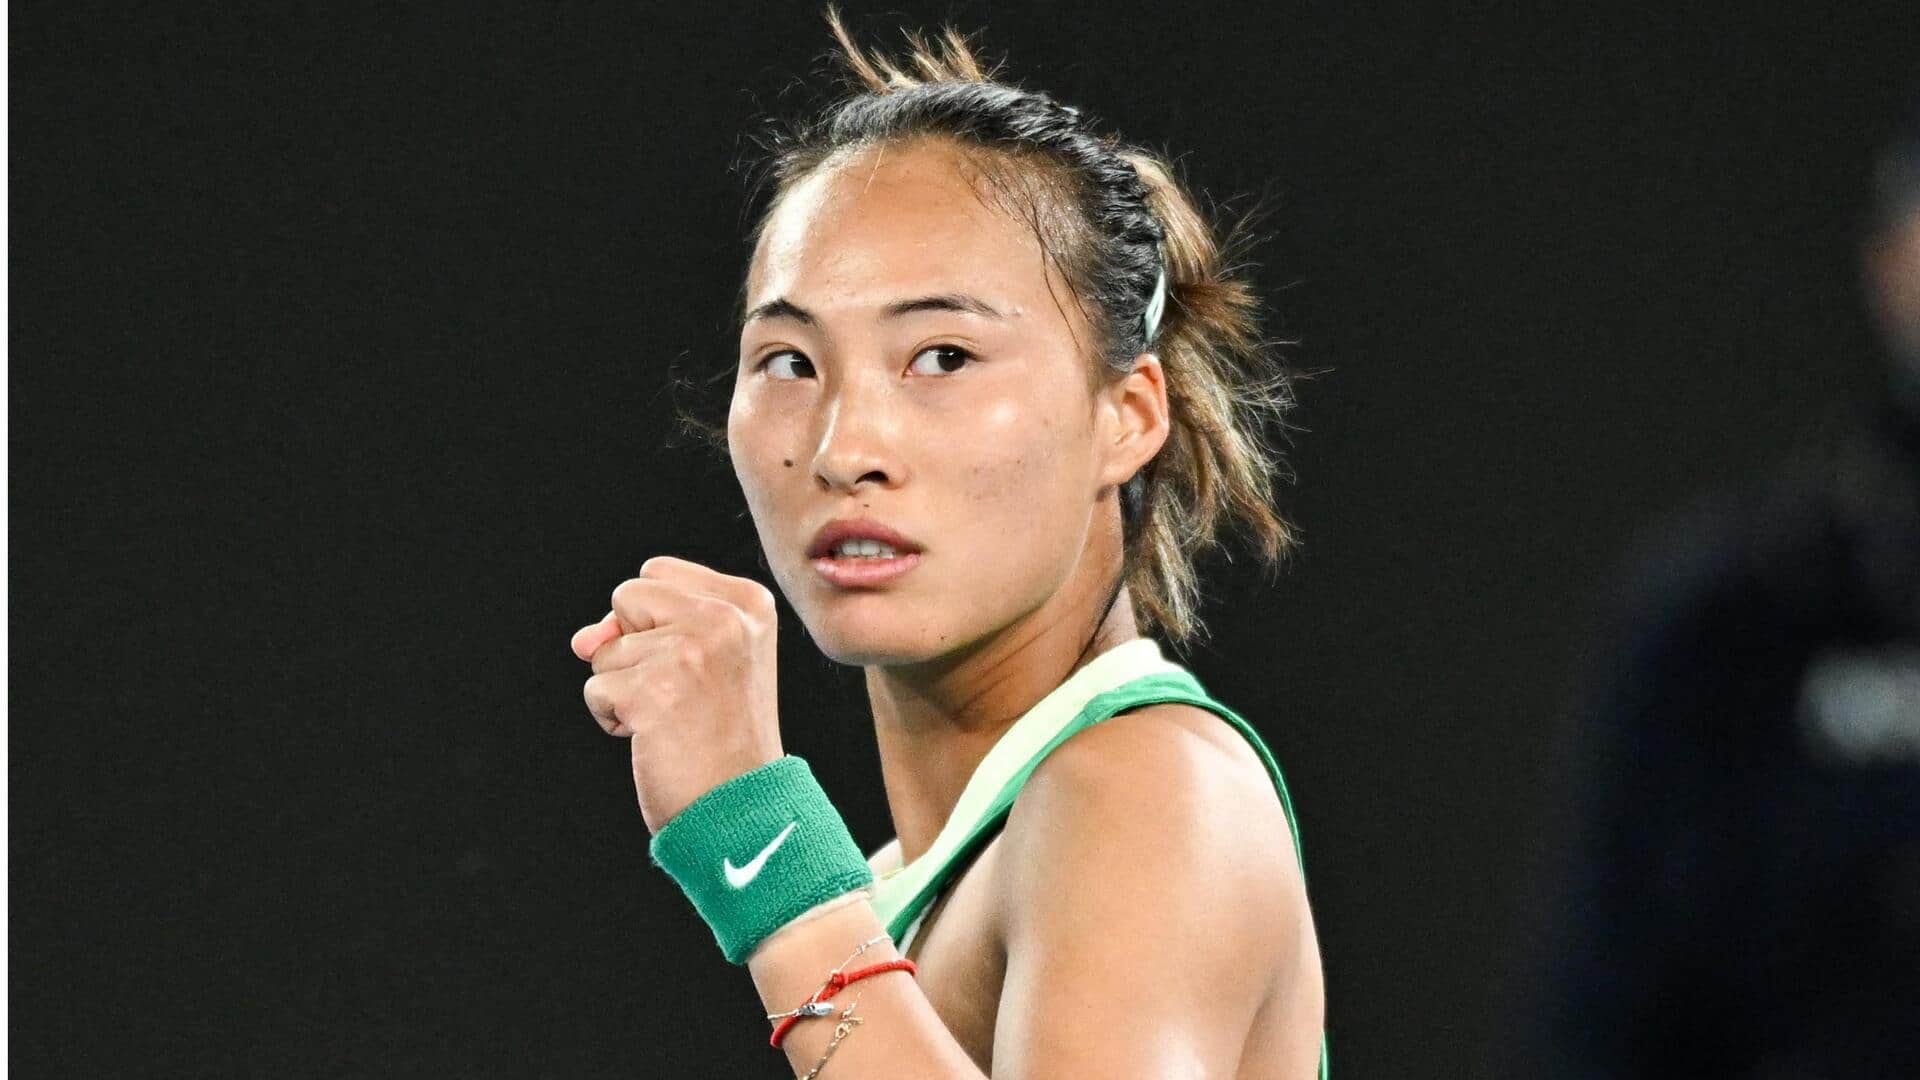 Zheng Qinwen reaches her maiden Australian Open quarter-final: Key stats